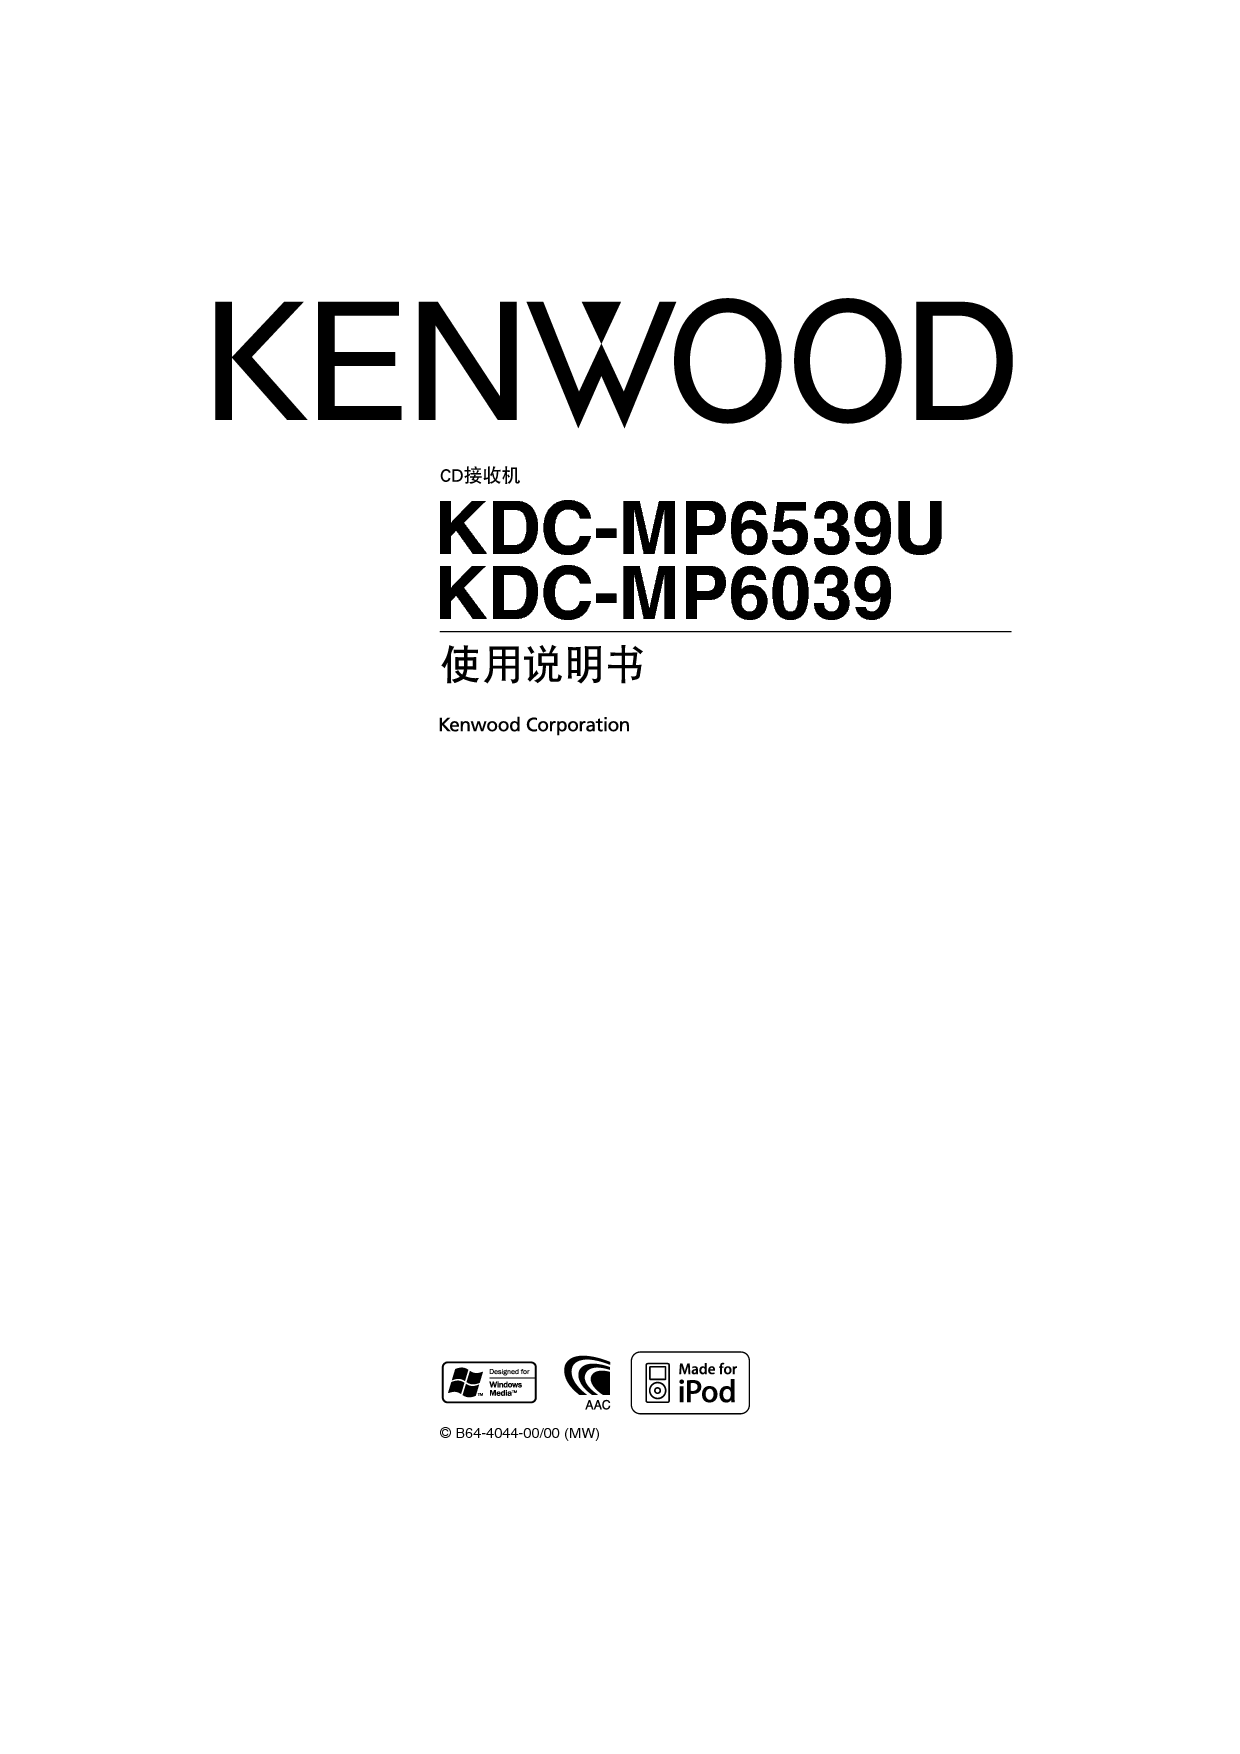 建伍 Kenwood KDC-MP6039 使用说明书 封面